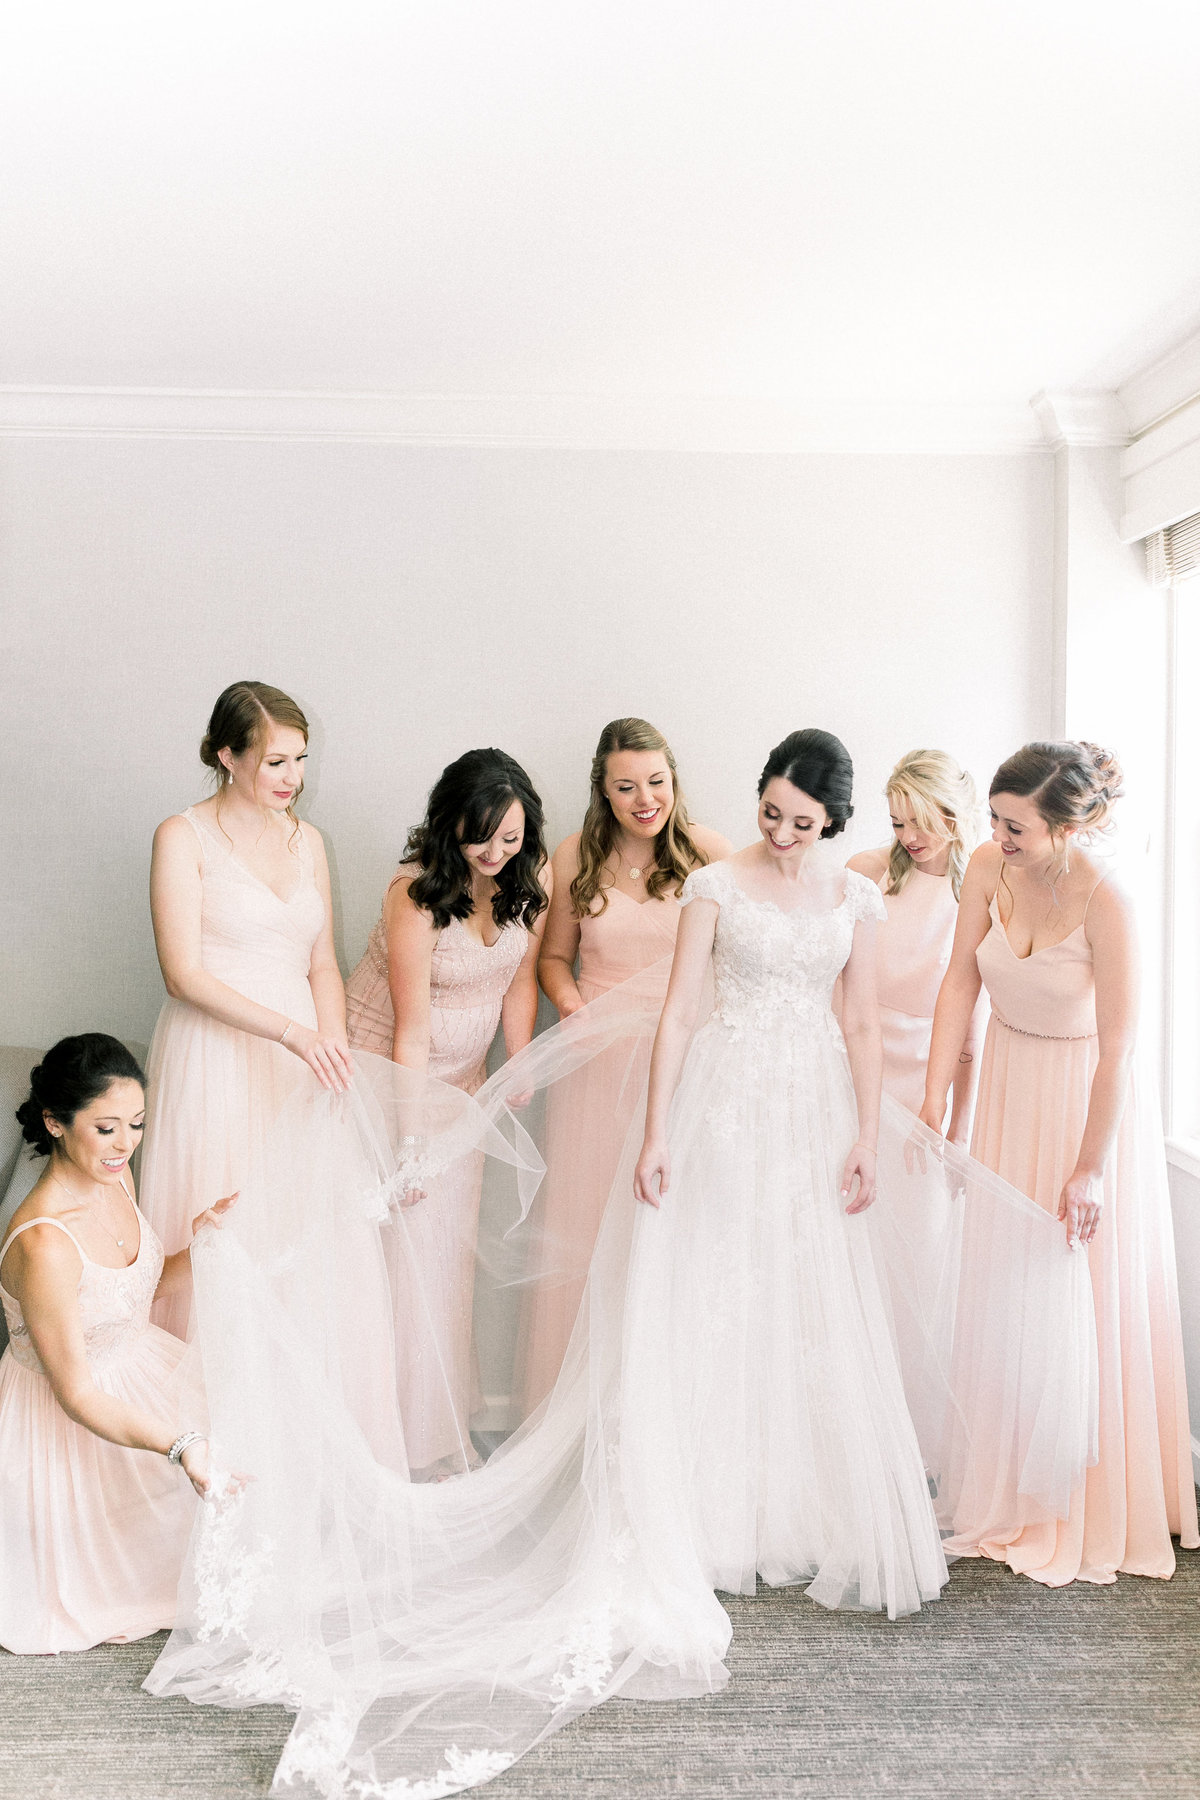 Kate & Jack_Wedding_Bride In Dress_1087